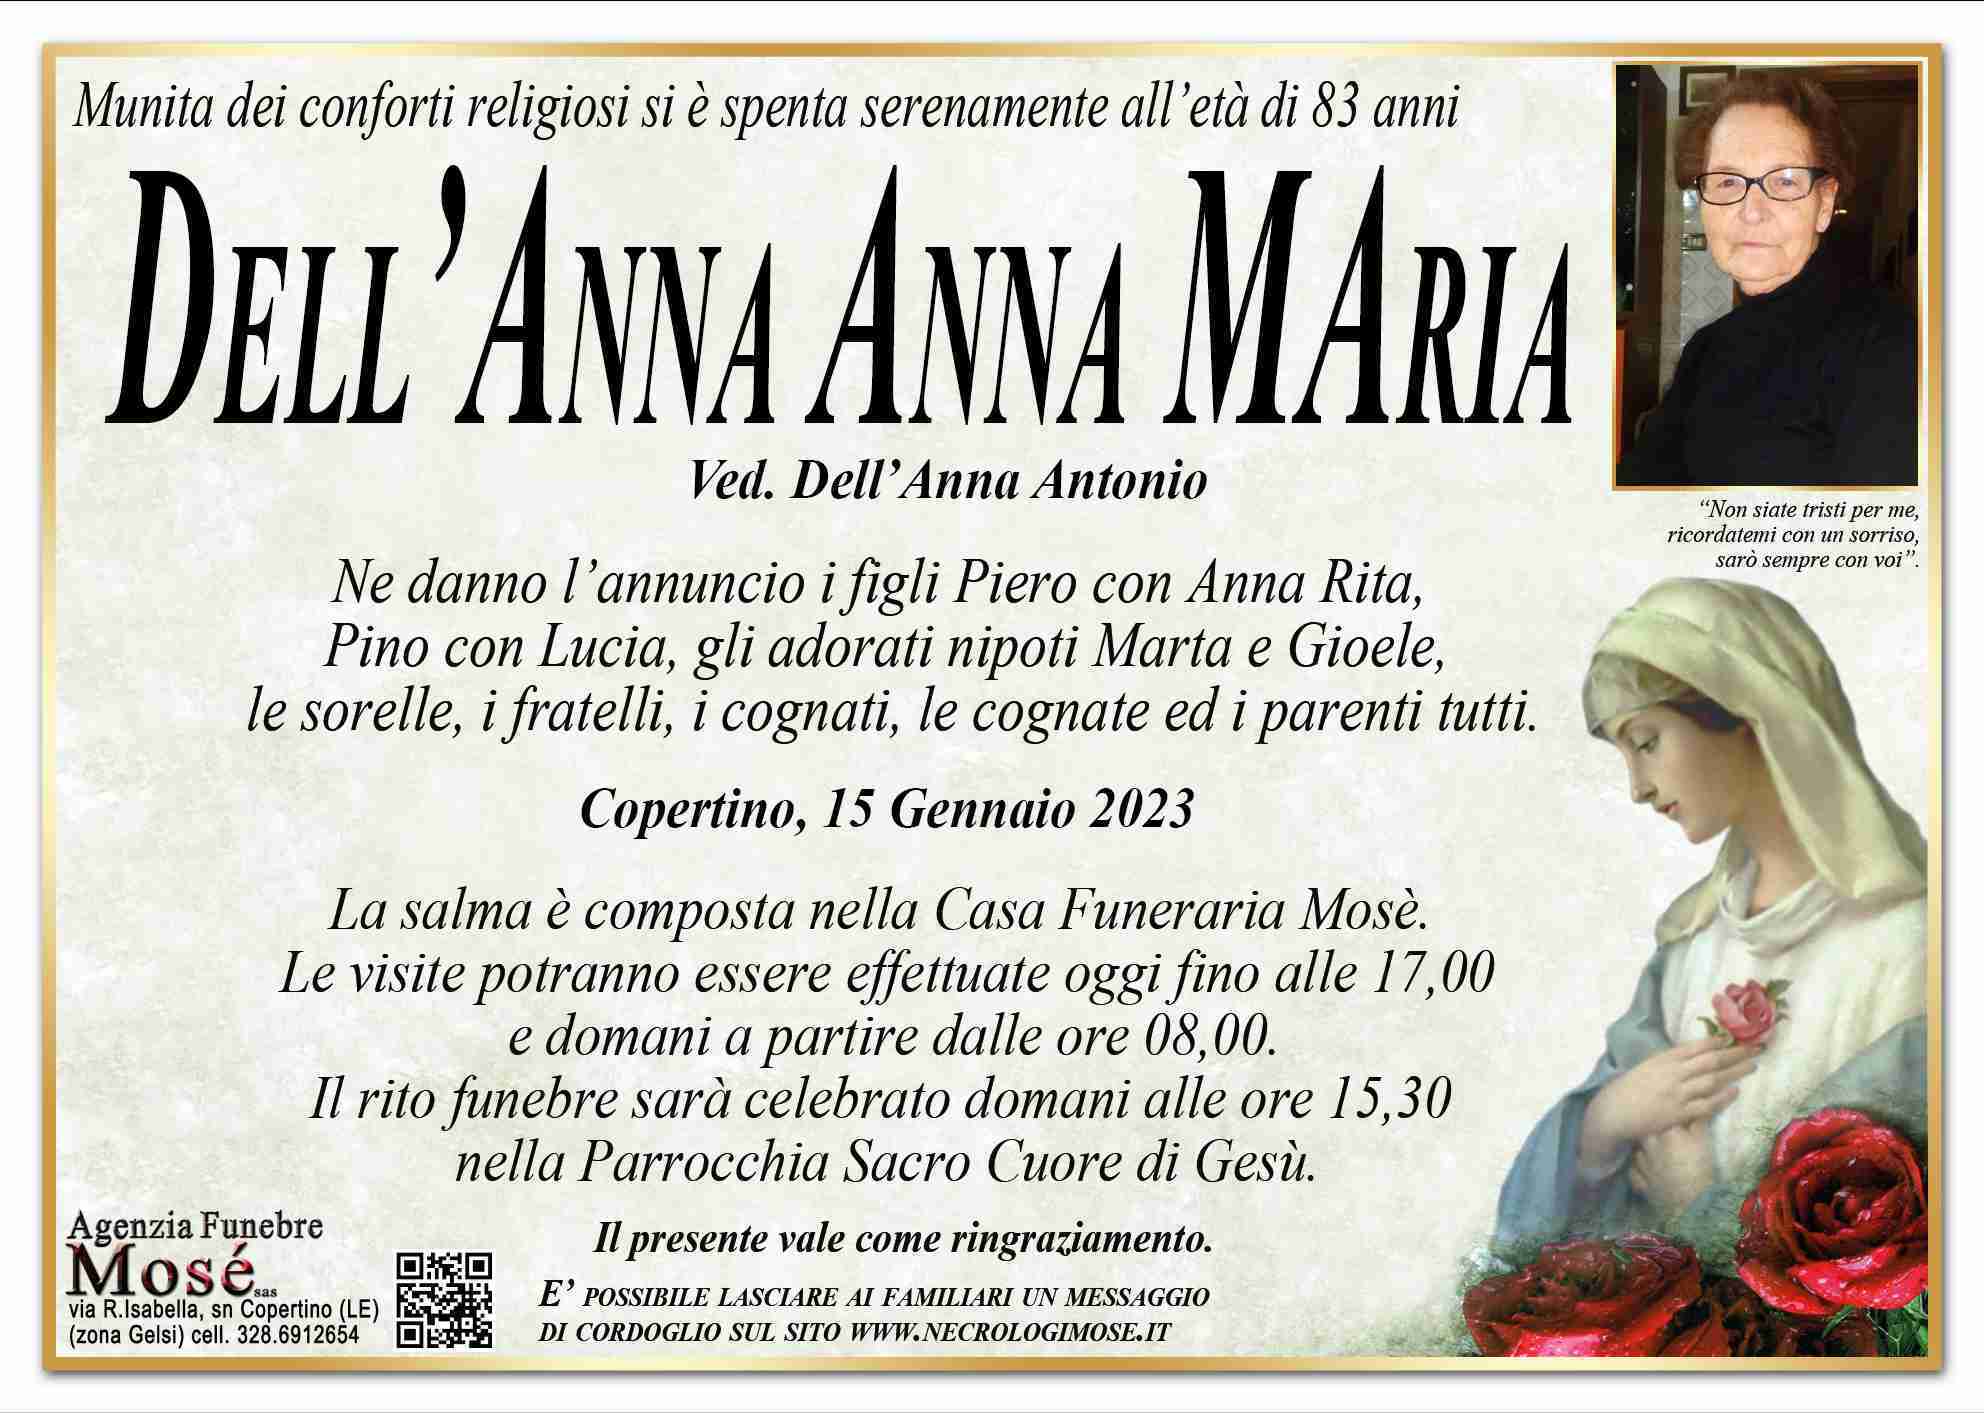 Anna Maria Dell'Anna